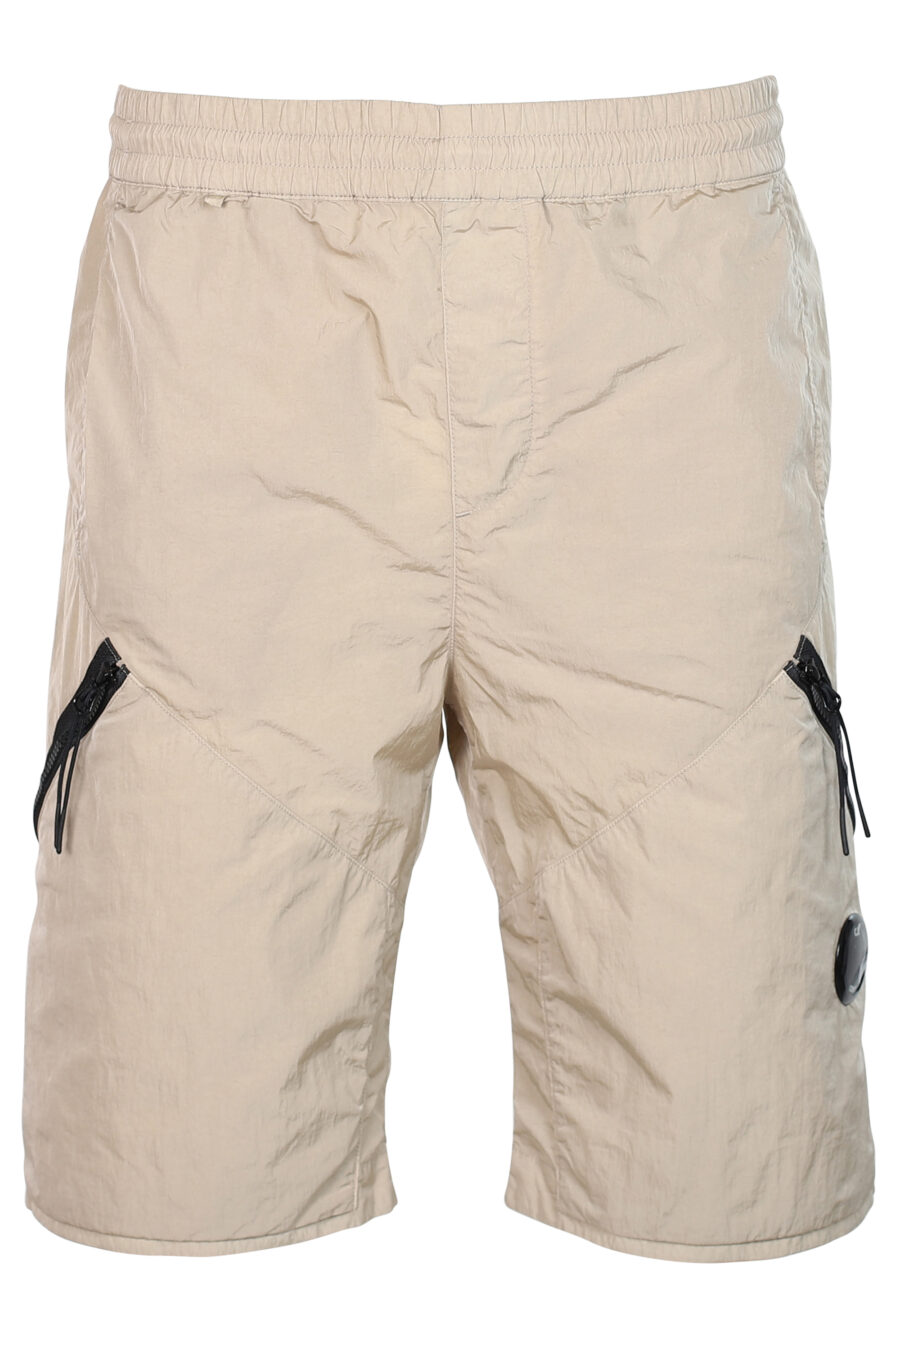 Pantalón corto beige con cremallera diagonal y logo lente - 7620943518221